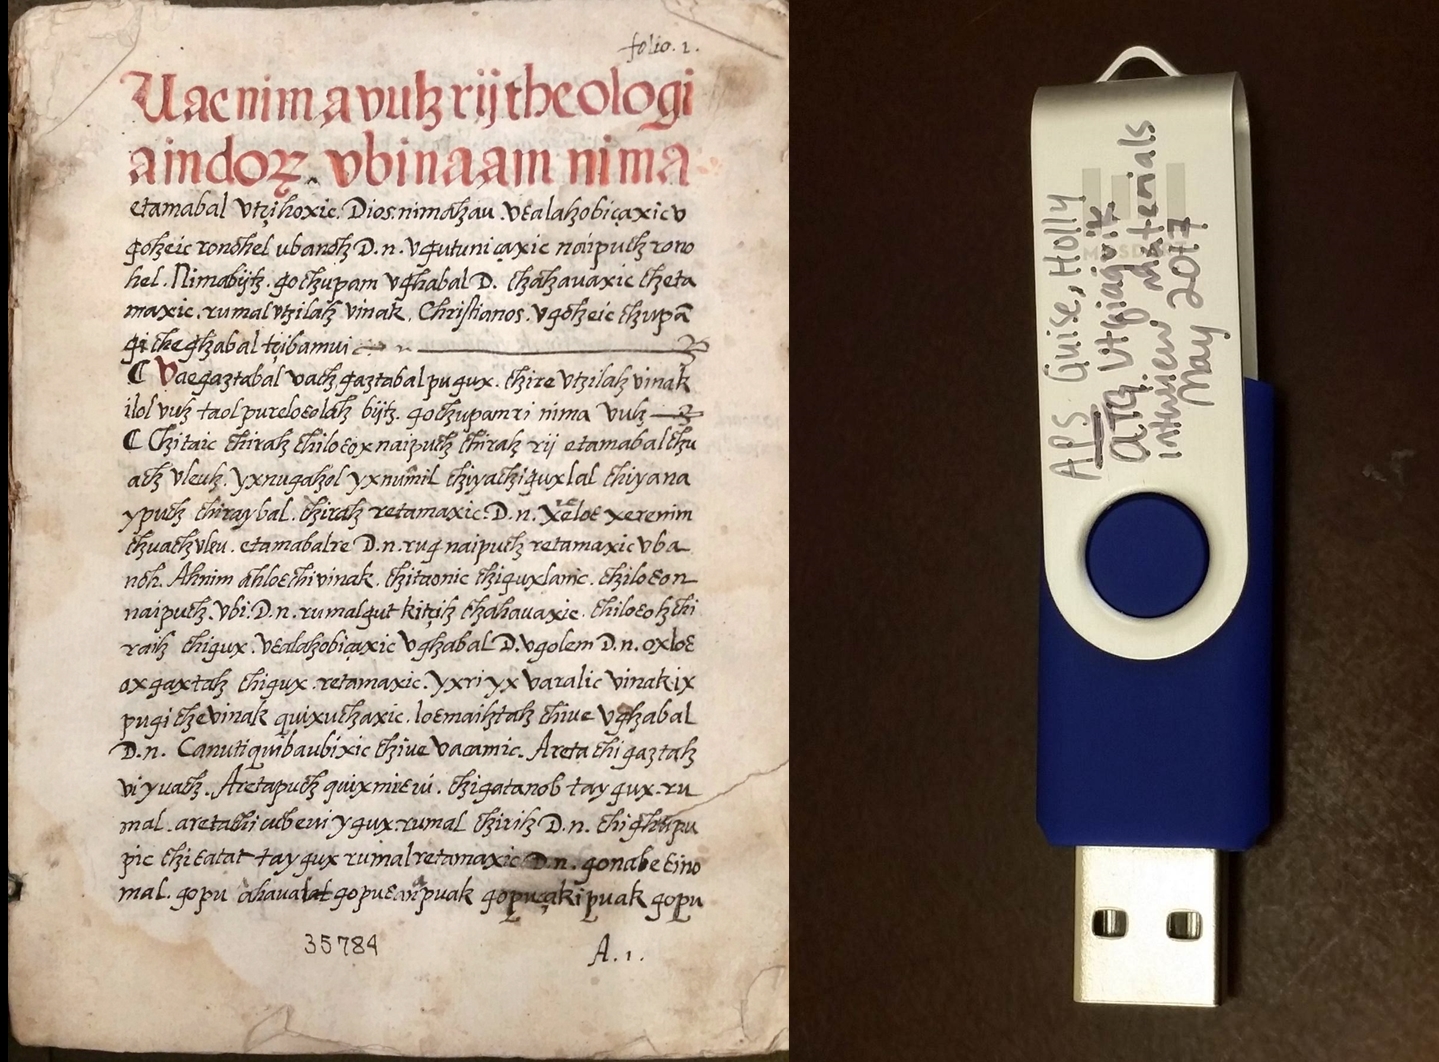 1553 manuscript and USB drive